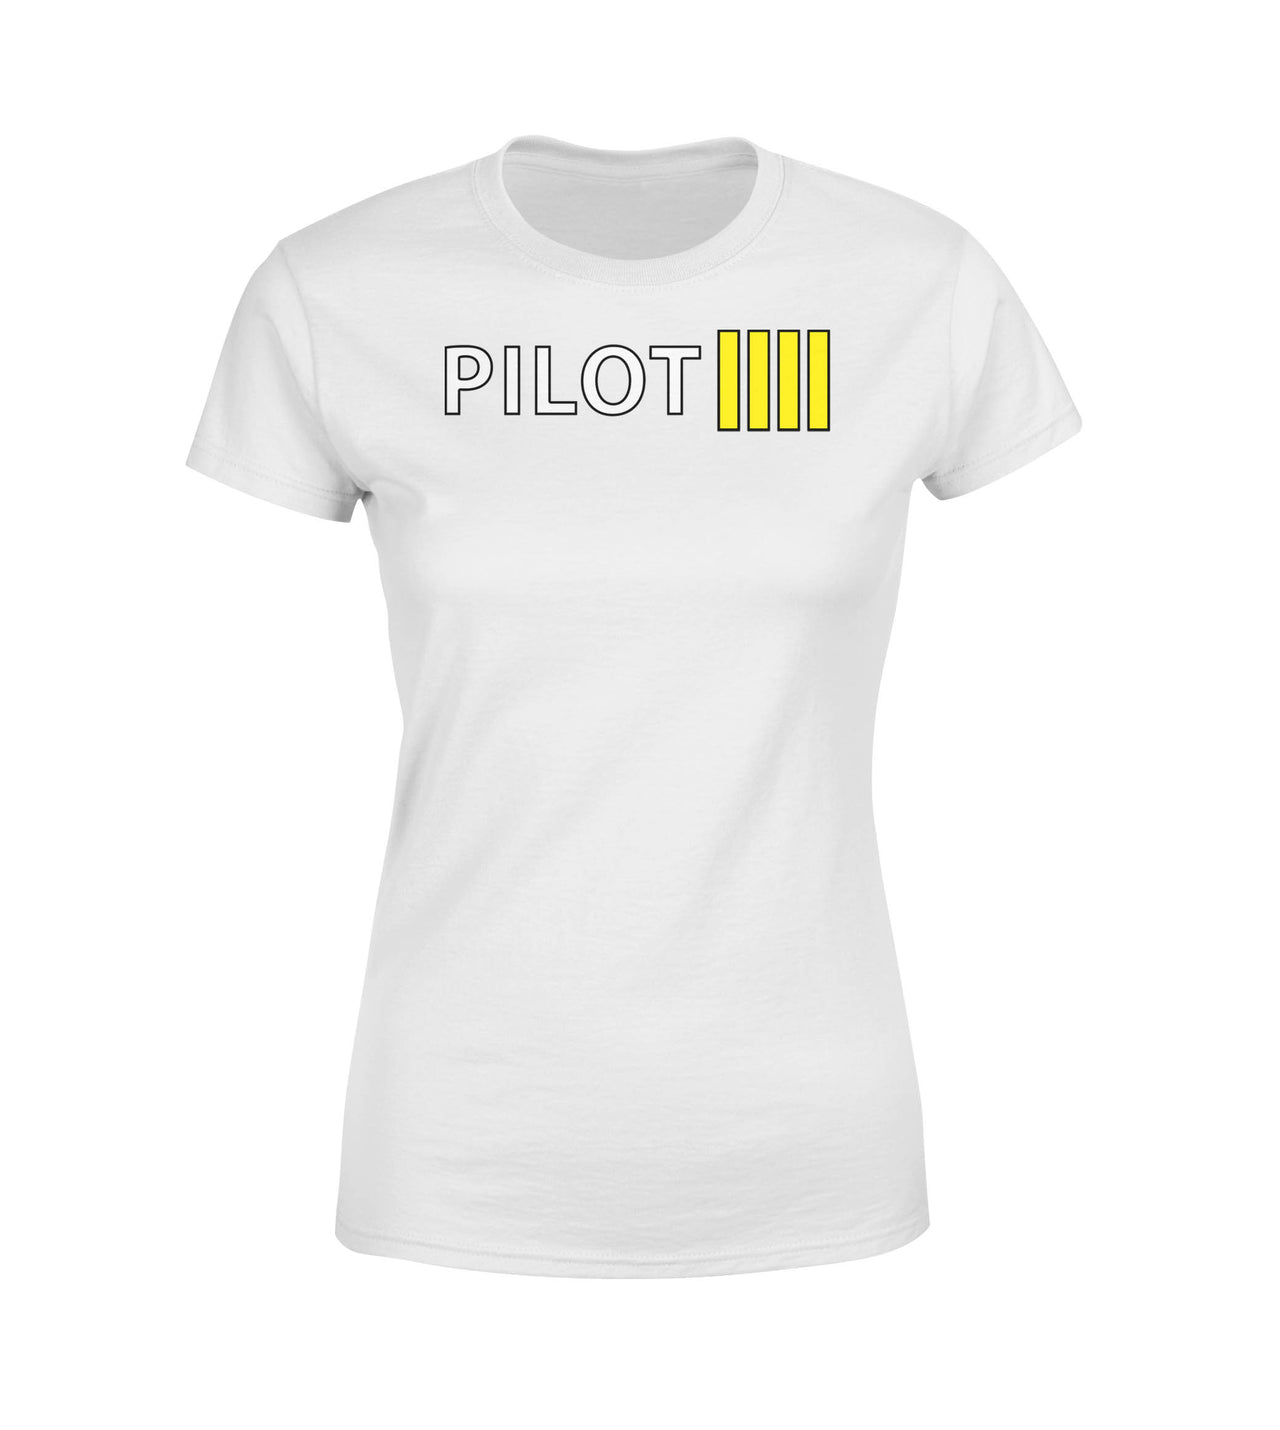 Pilot & Stripes (4 Lines) Designed Women T-Shirts